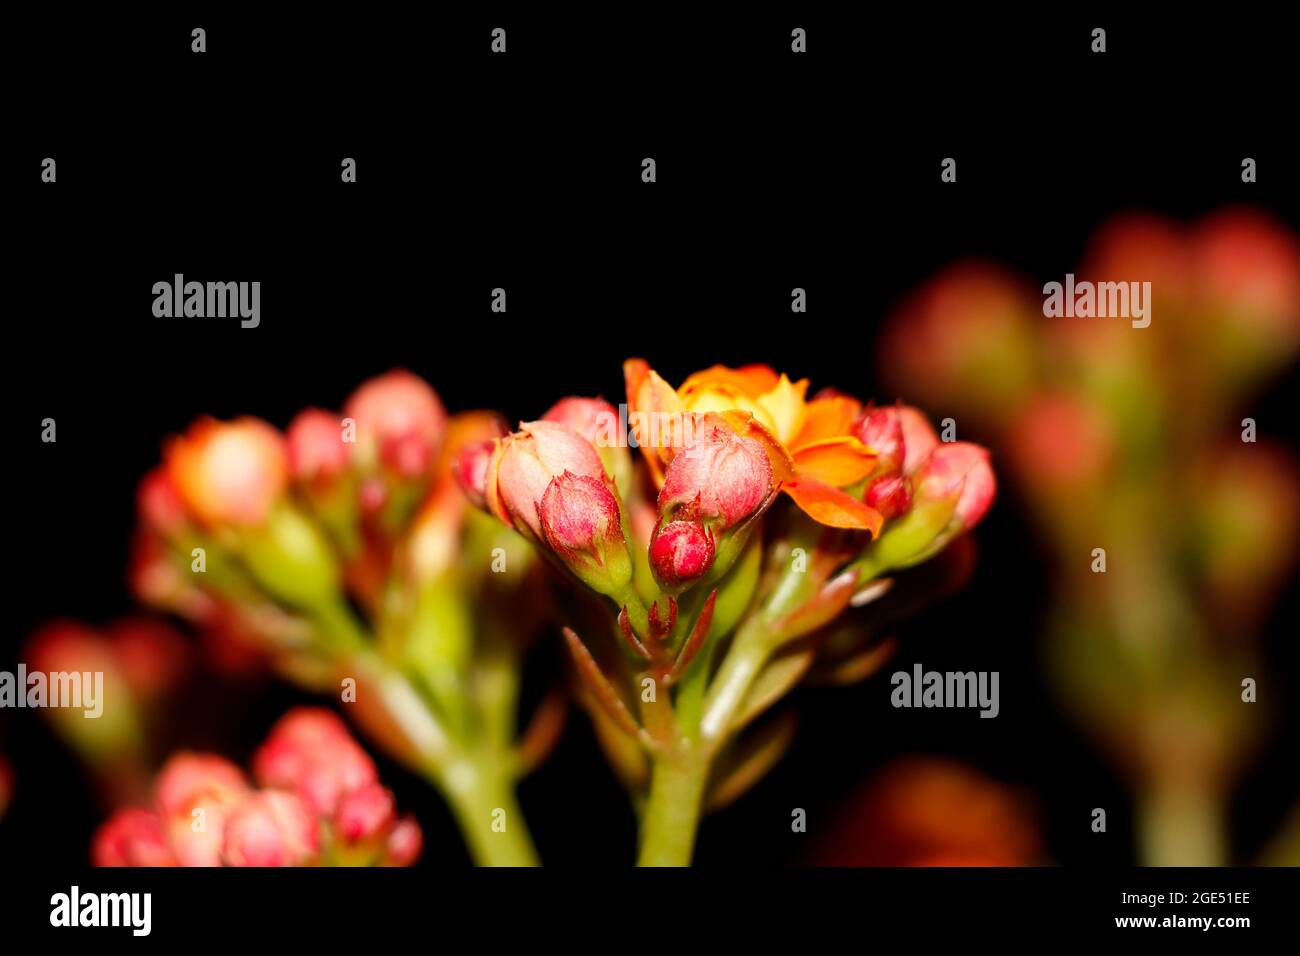 Closeup Image Of Beautiful Florist Kalanchoe Flower And Buds. Selective Focus Stock Photo